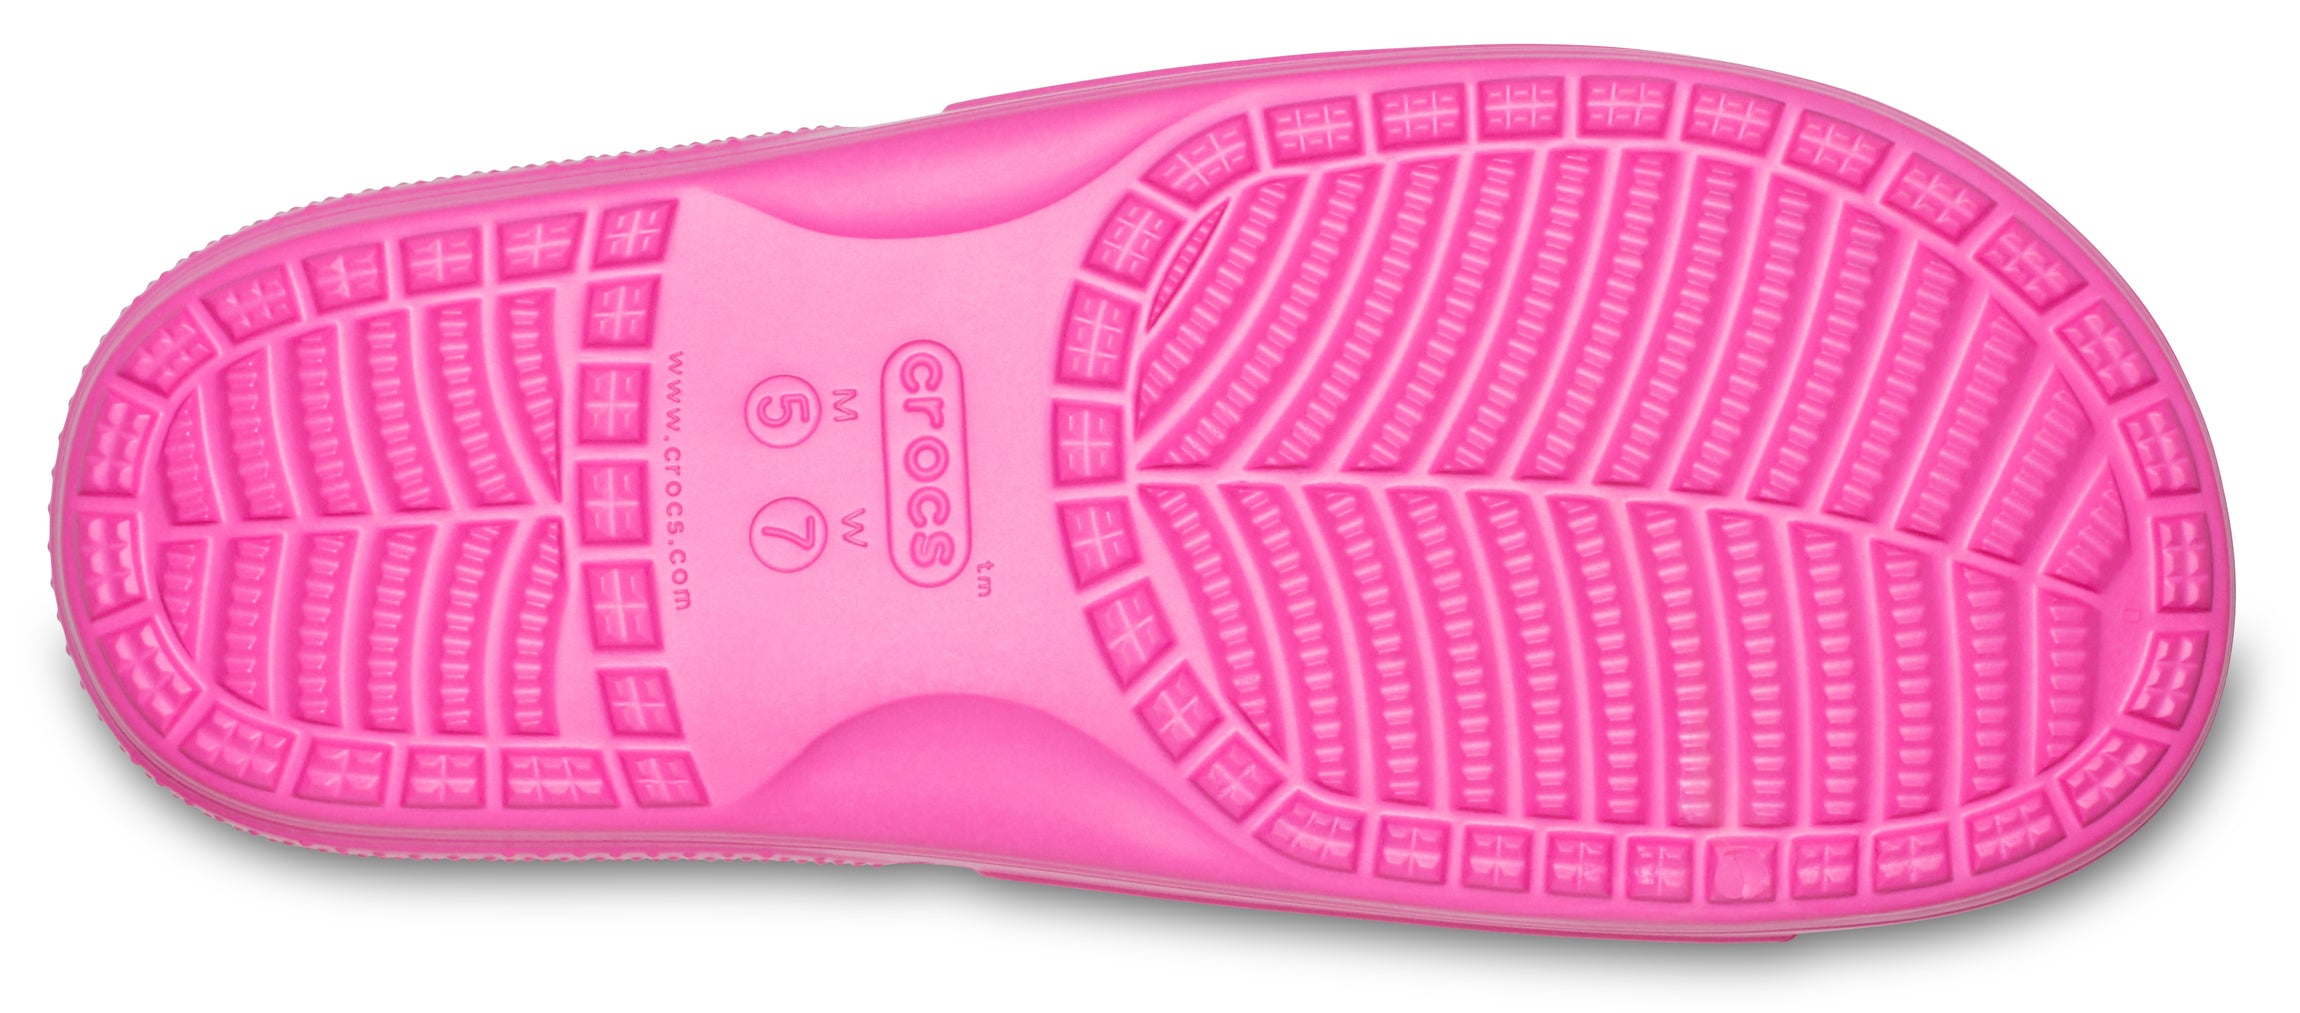 Classic Crocs Slide Electric Pink